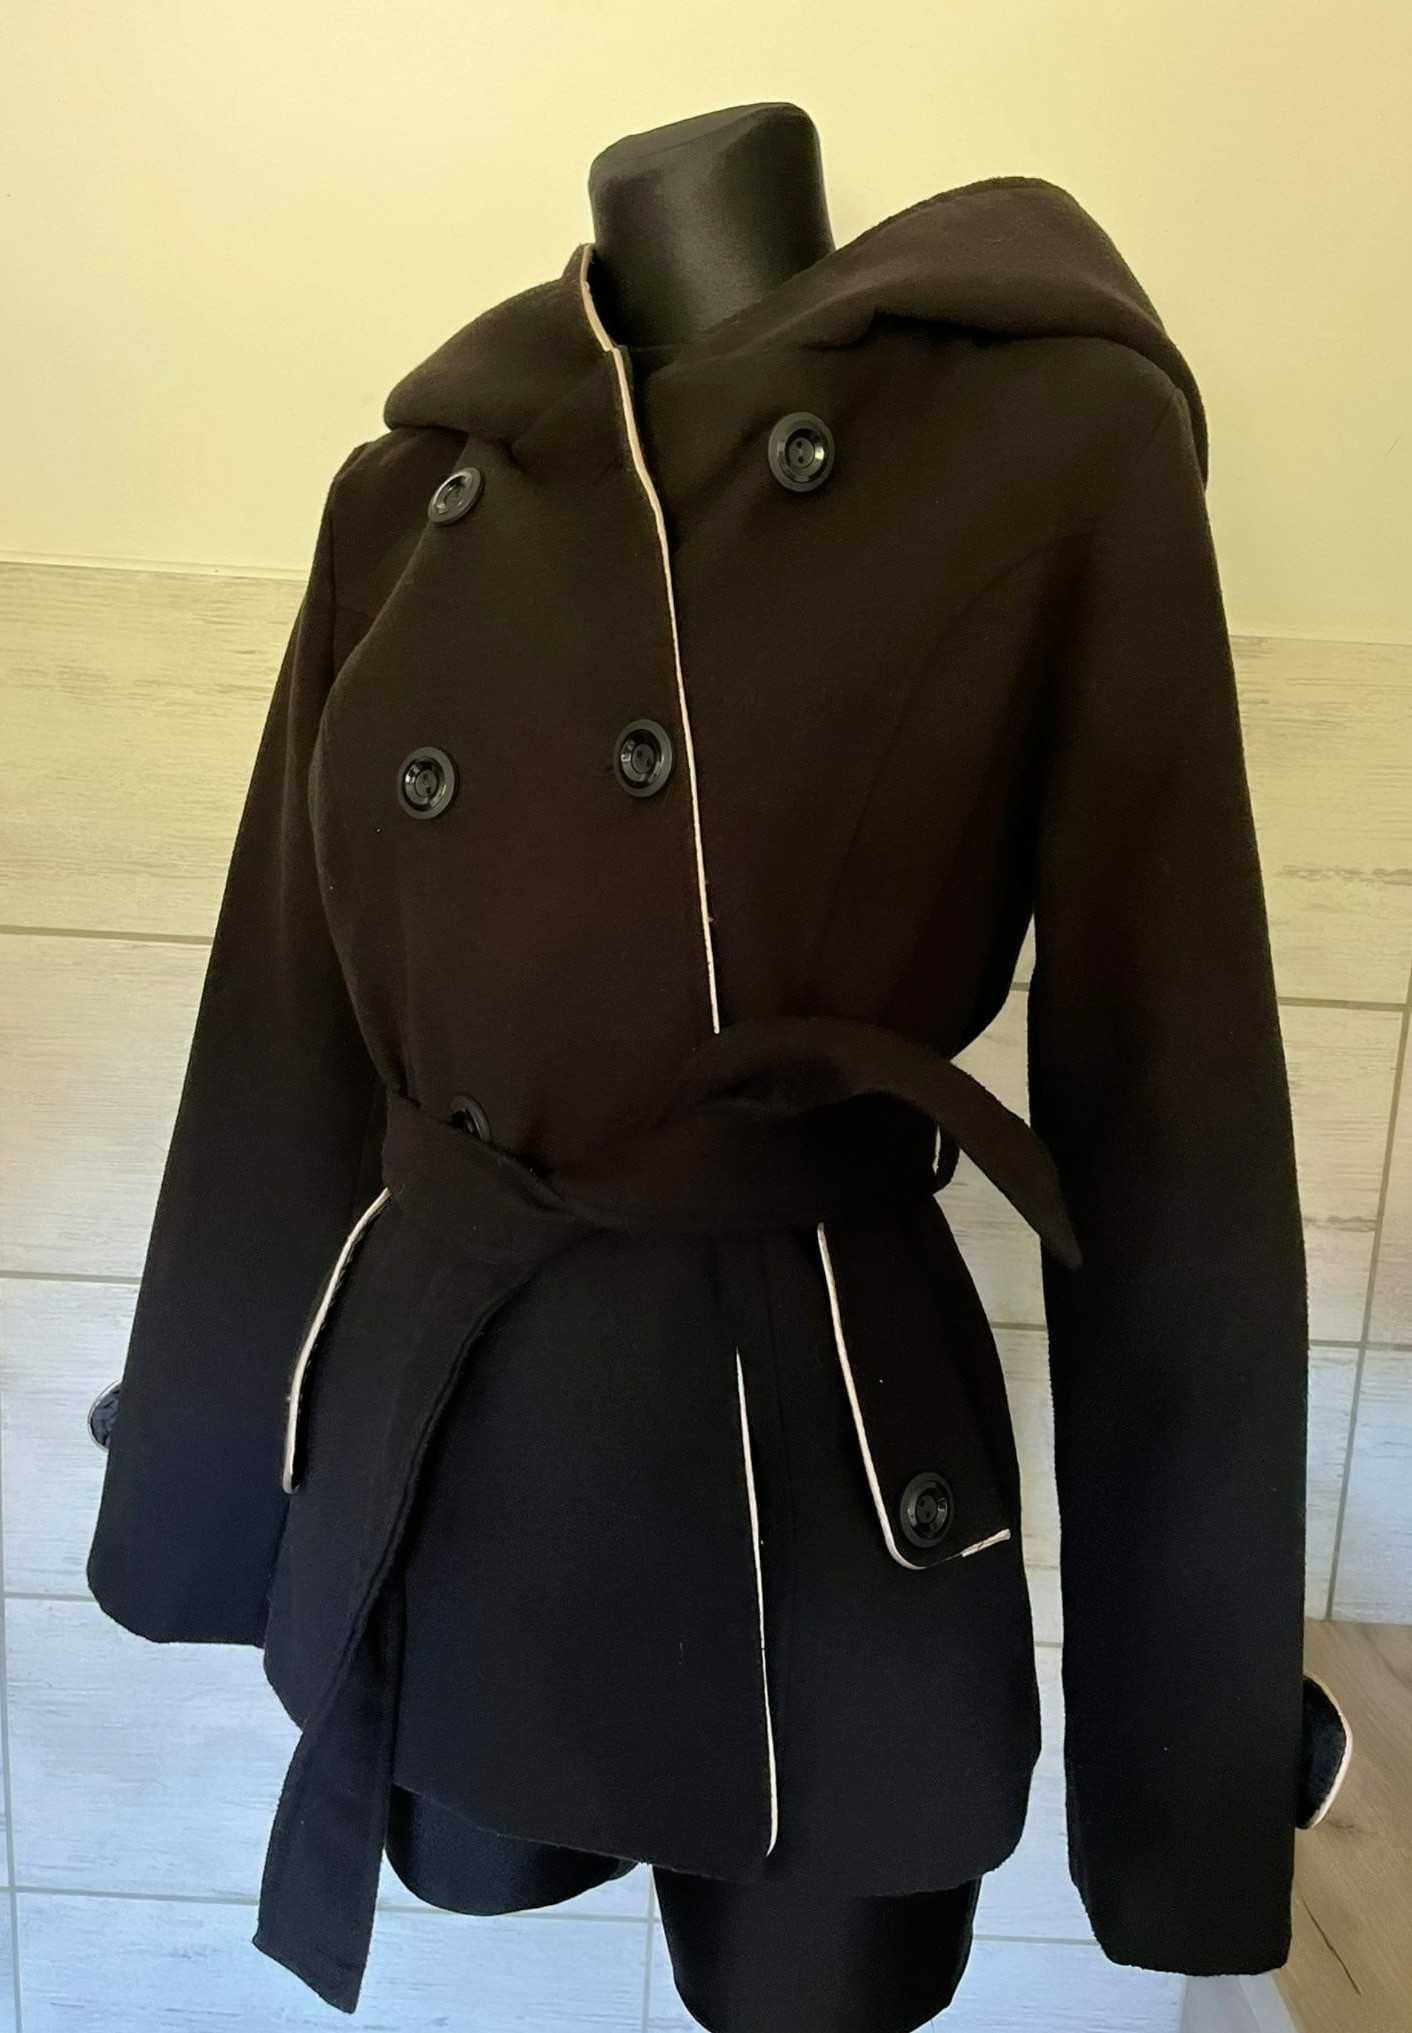 Czarny damski płaszcz klasyczny z paskiem i guzikami rozmiar M/L